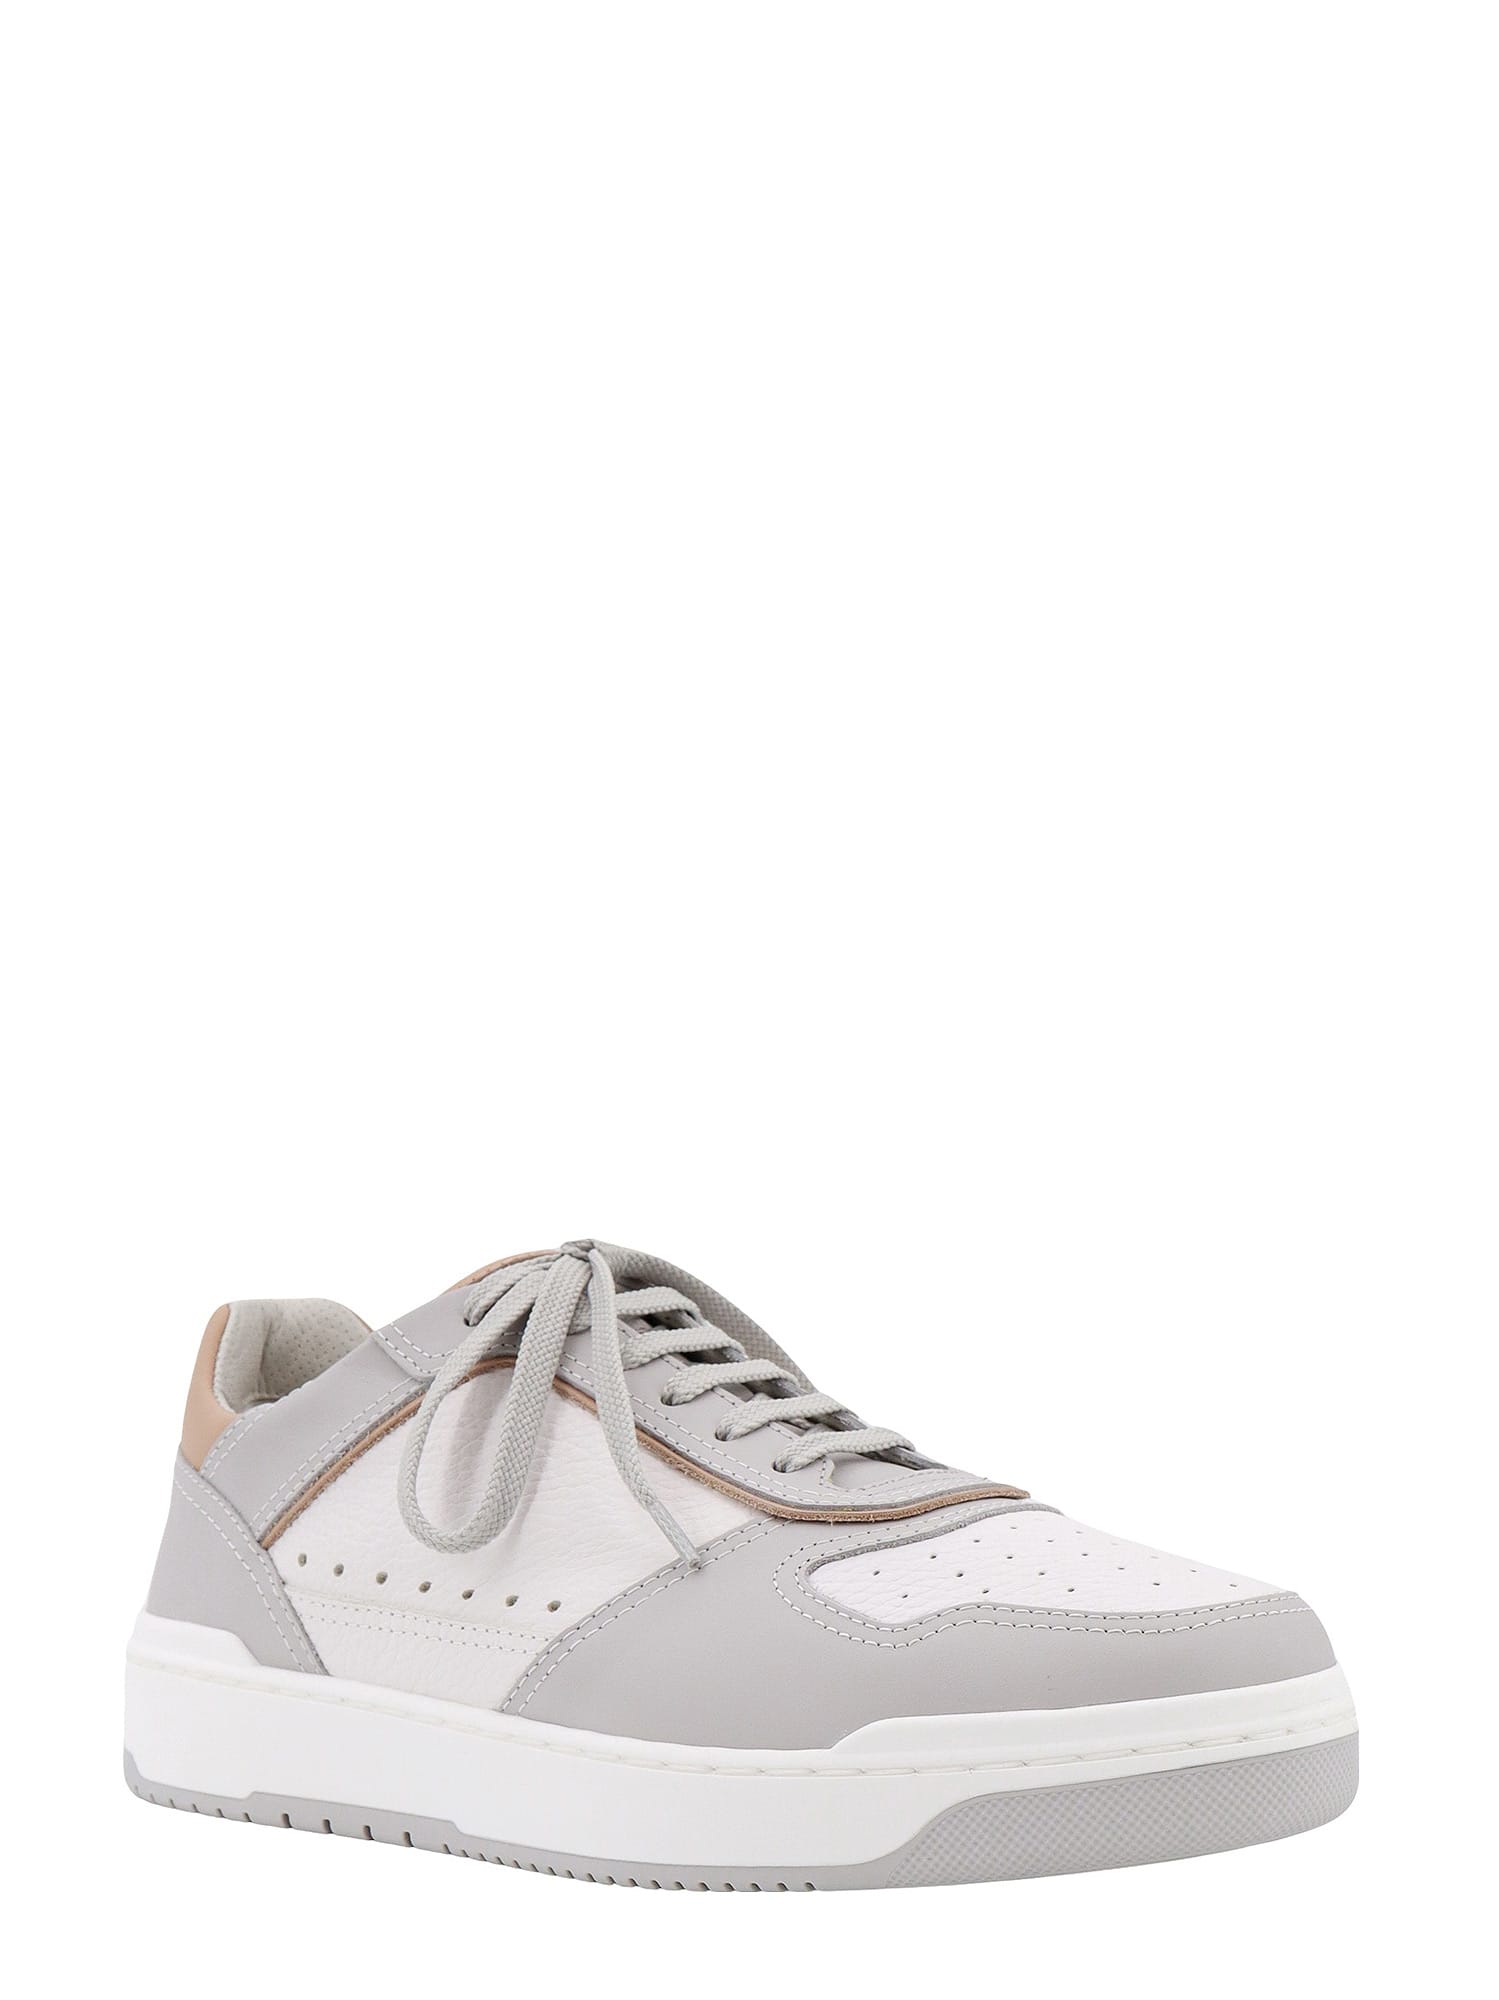 Shop Brunello Cucinelli Sneakers In White/grey